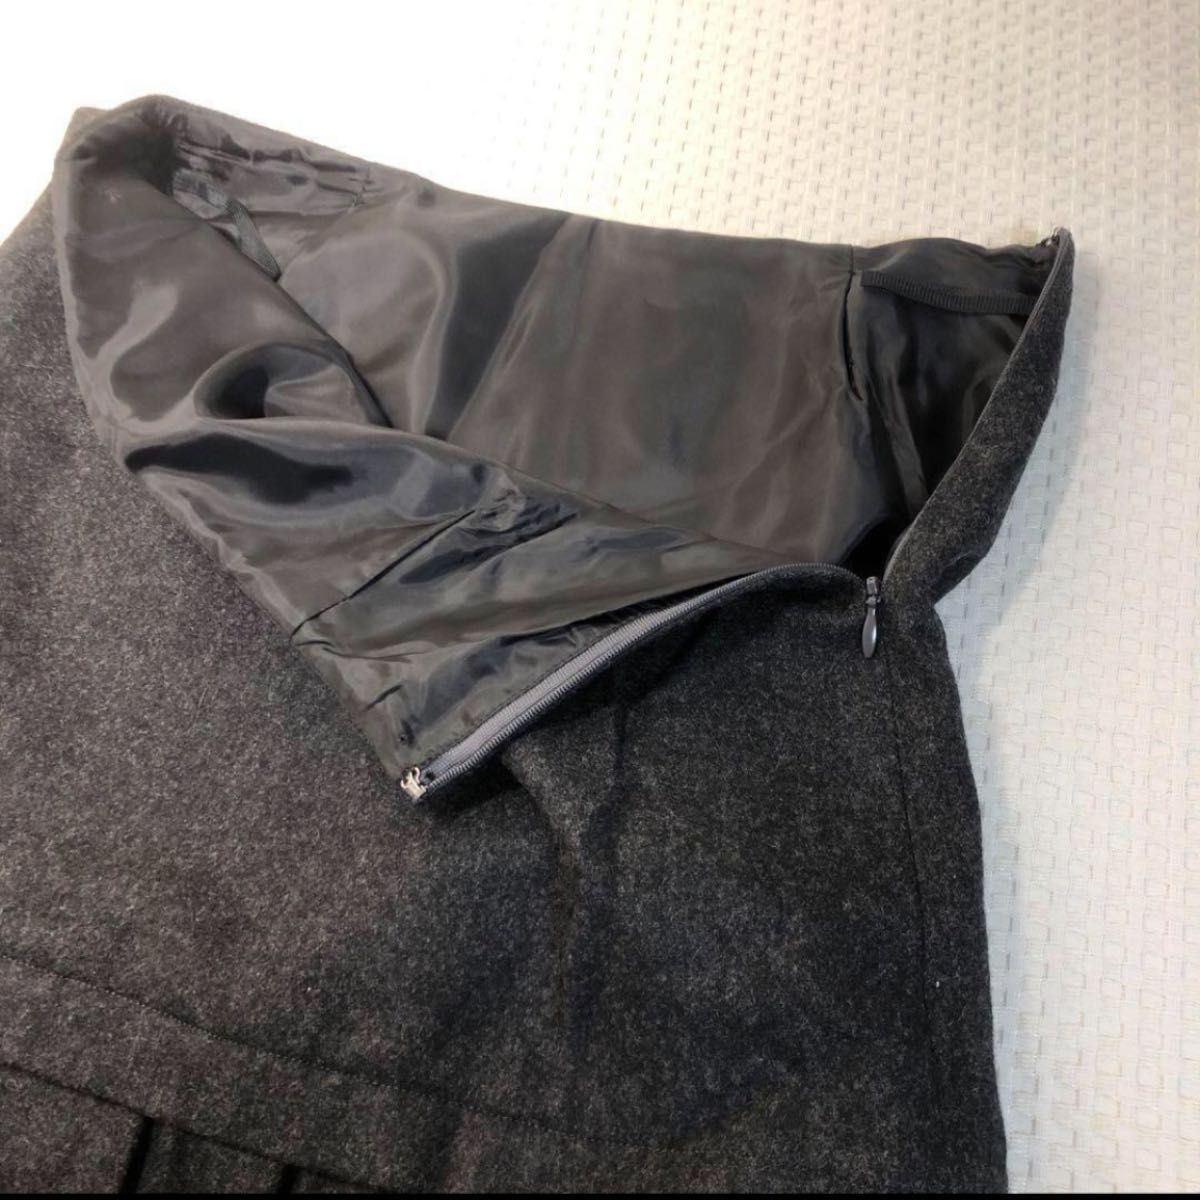 美品　日本製 ウール80% 暖か 2段フリル スカート 冬 S ミニ